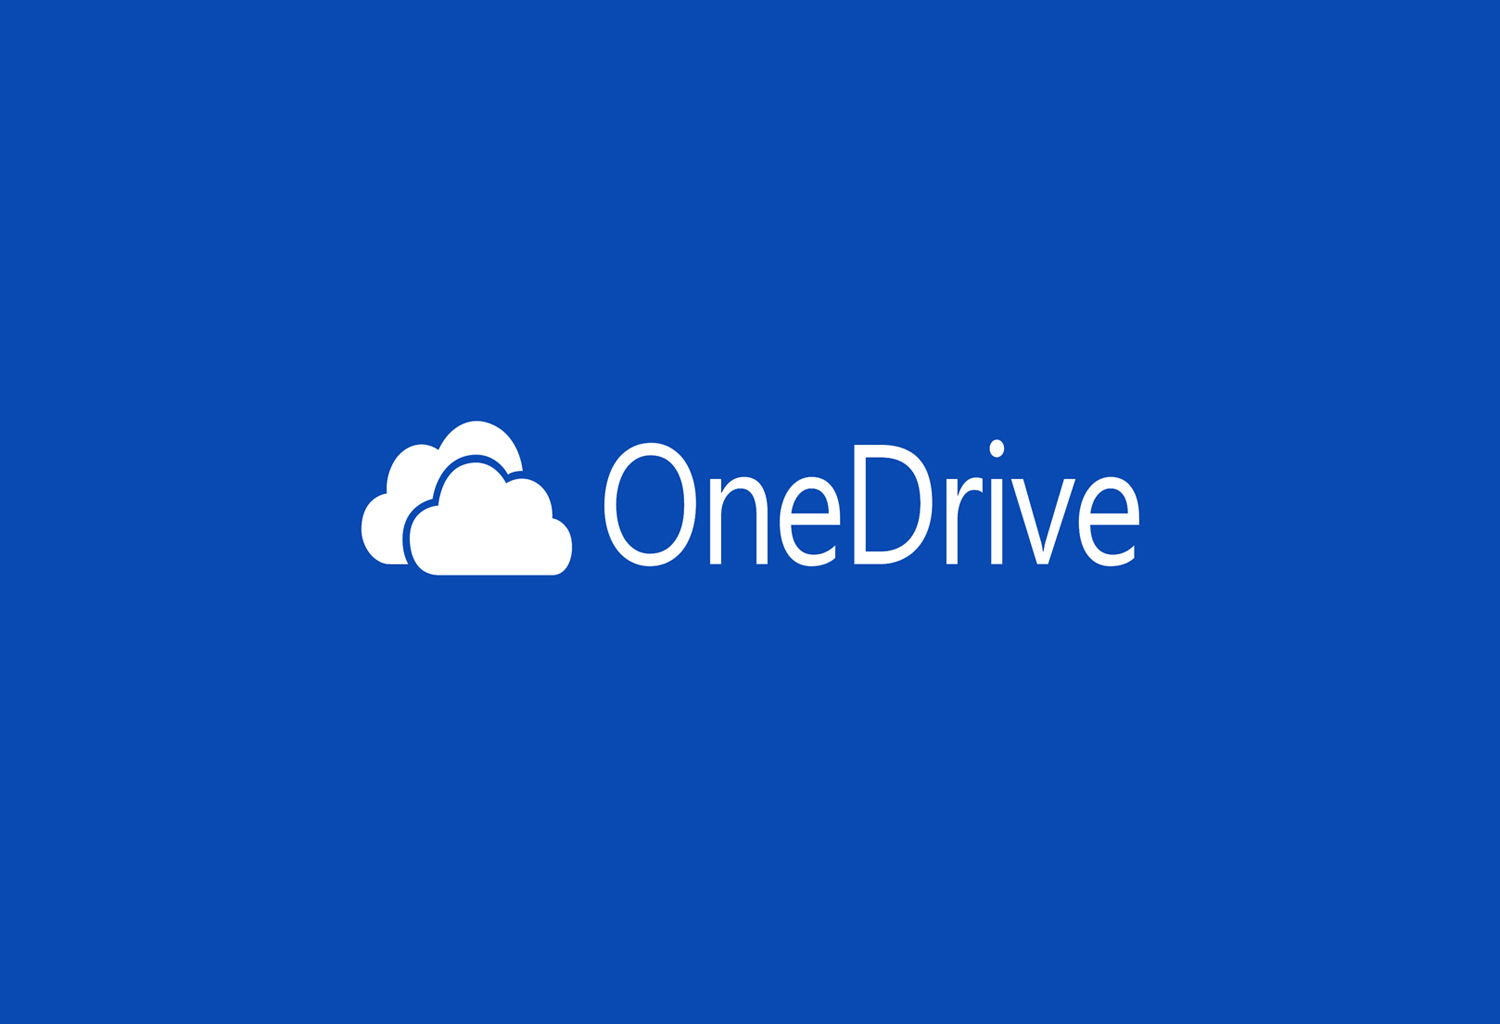 Te enseñamos cómo conseguir más espacio en OneDrive